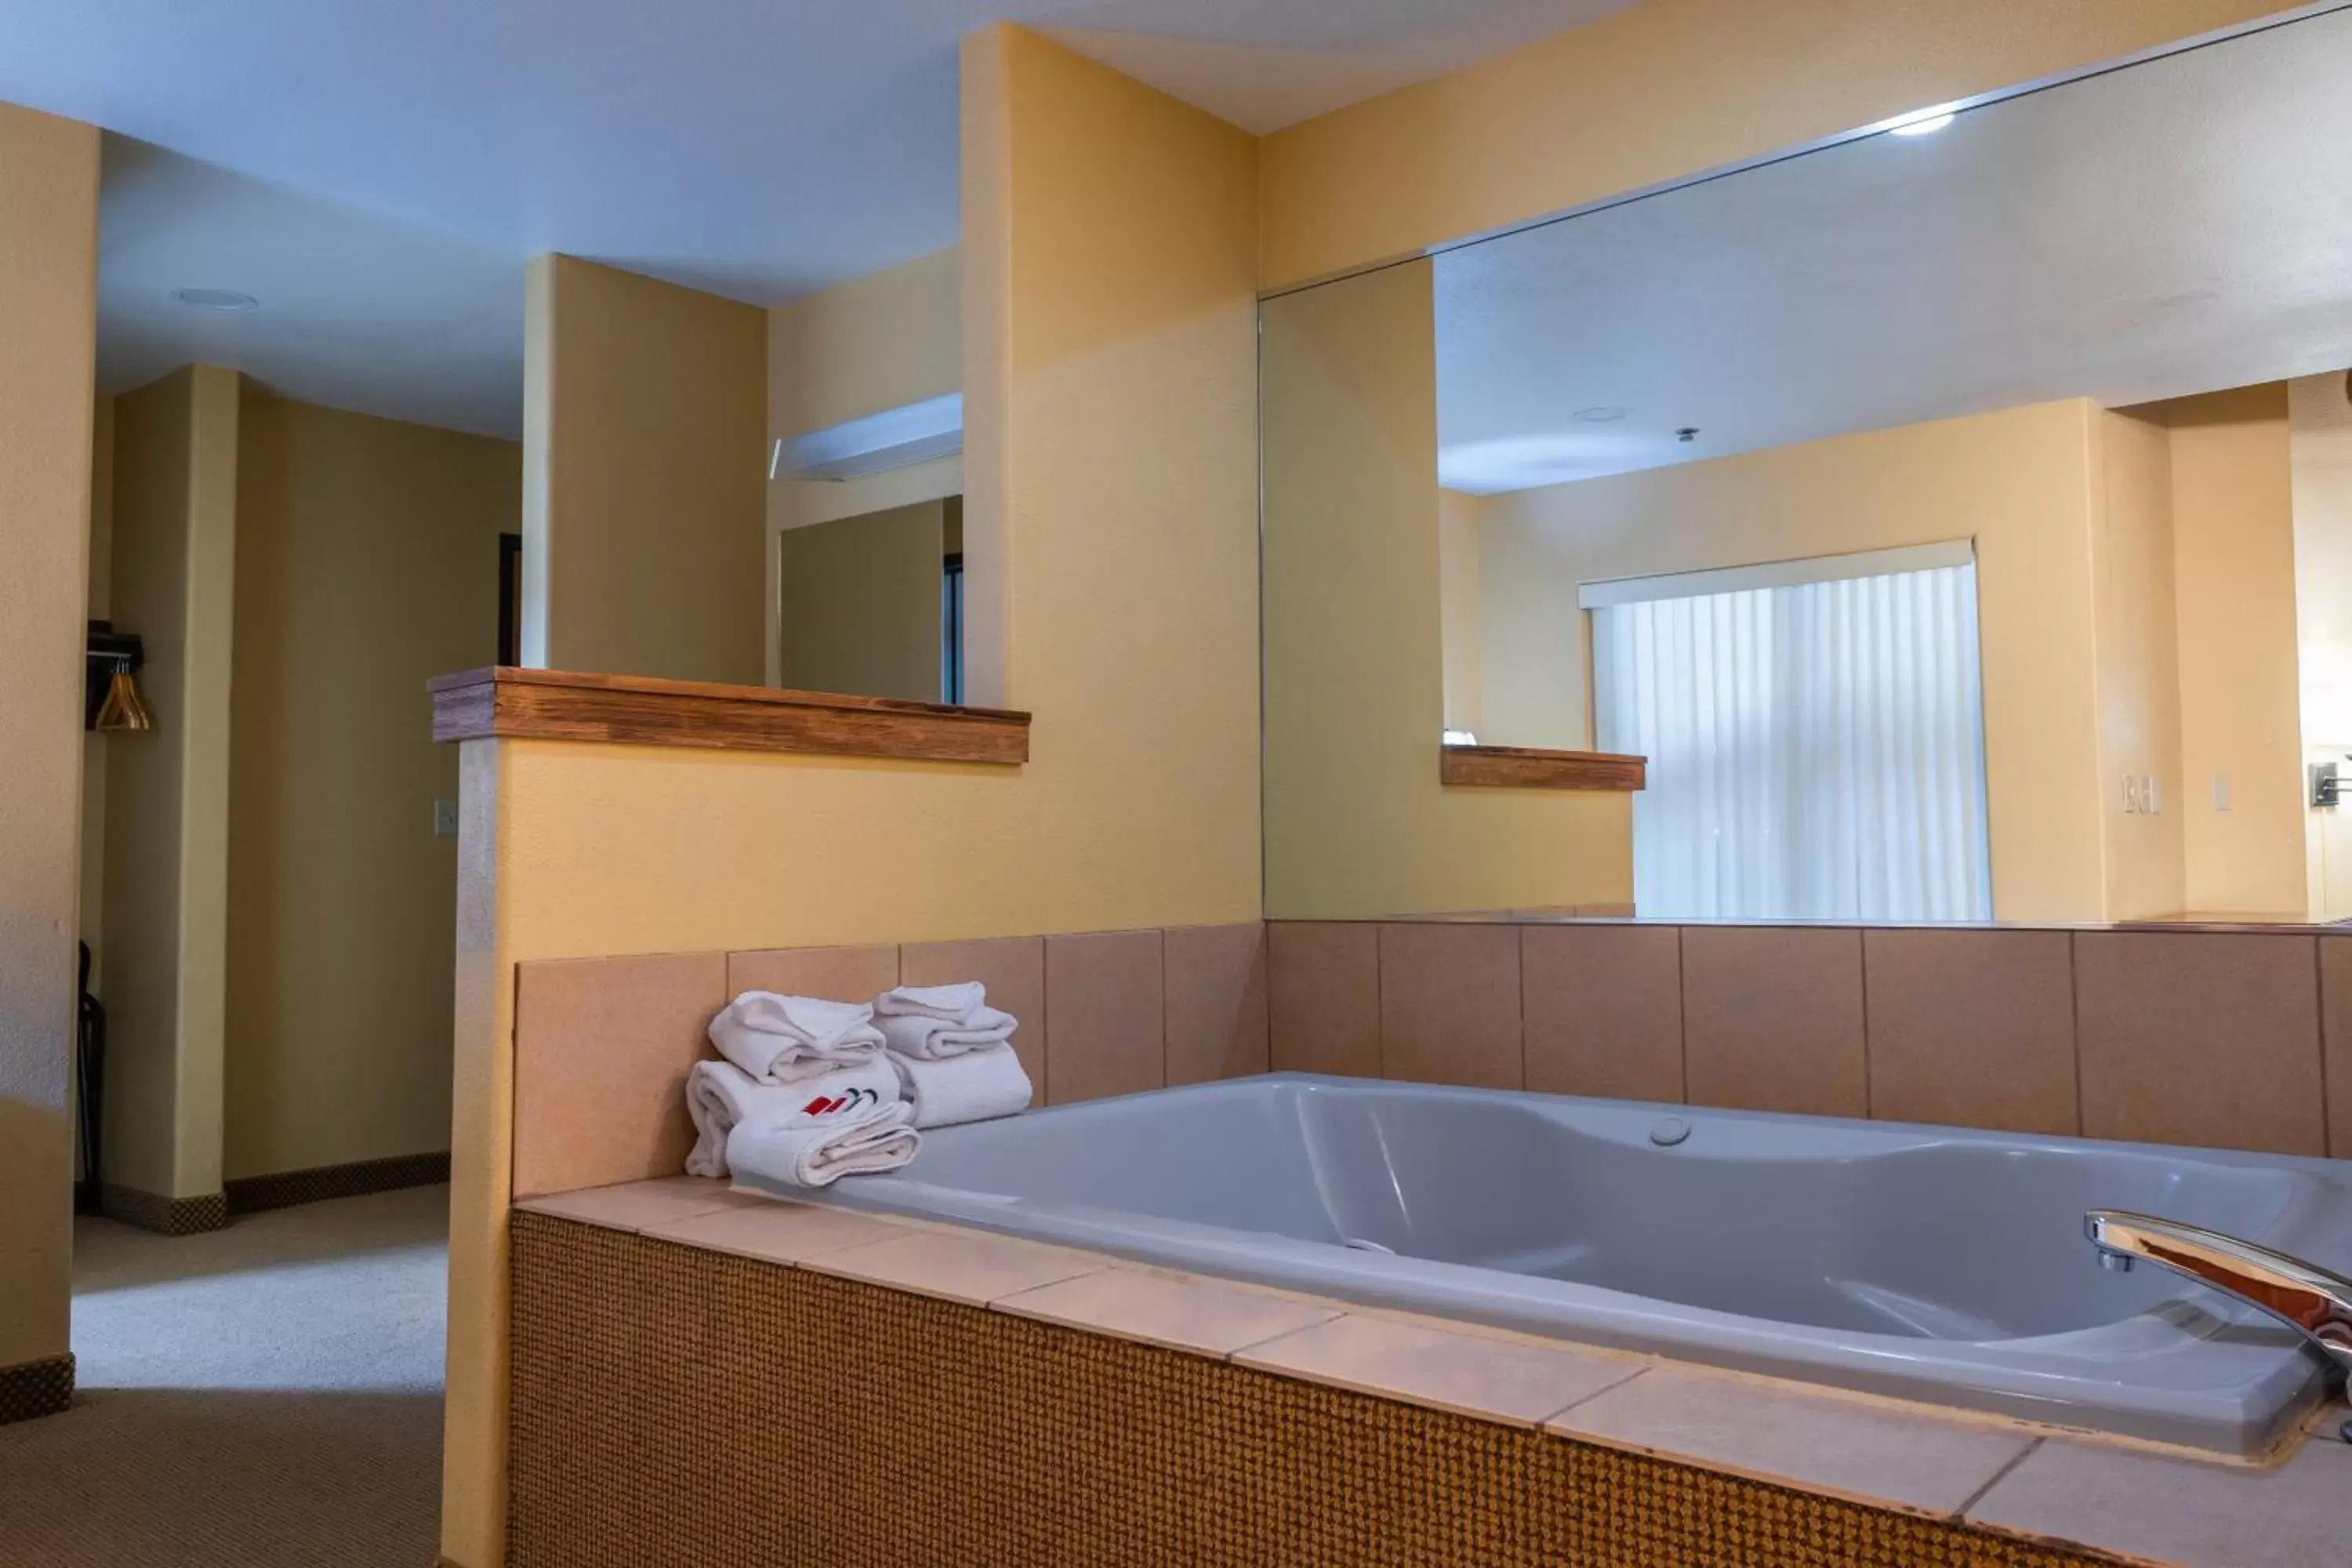 Bathroom in Pinedale Hotel & Suites